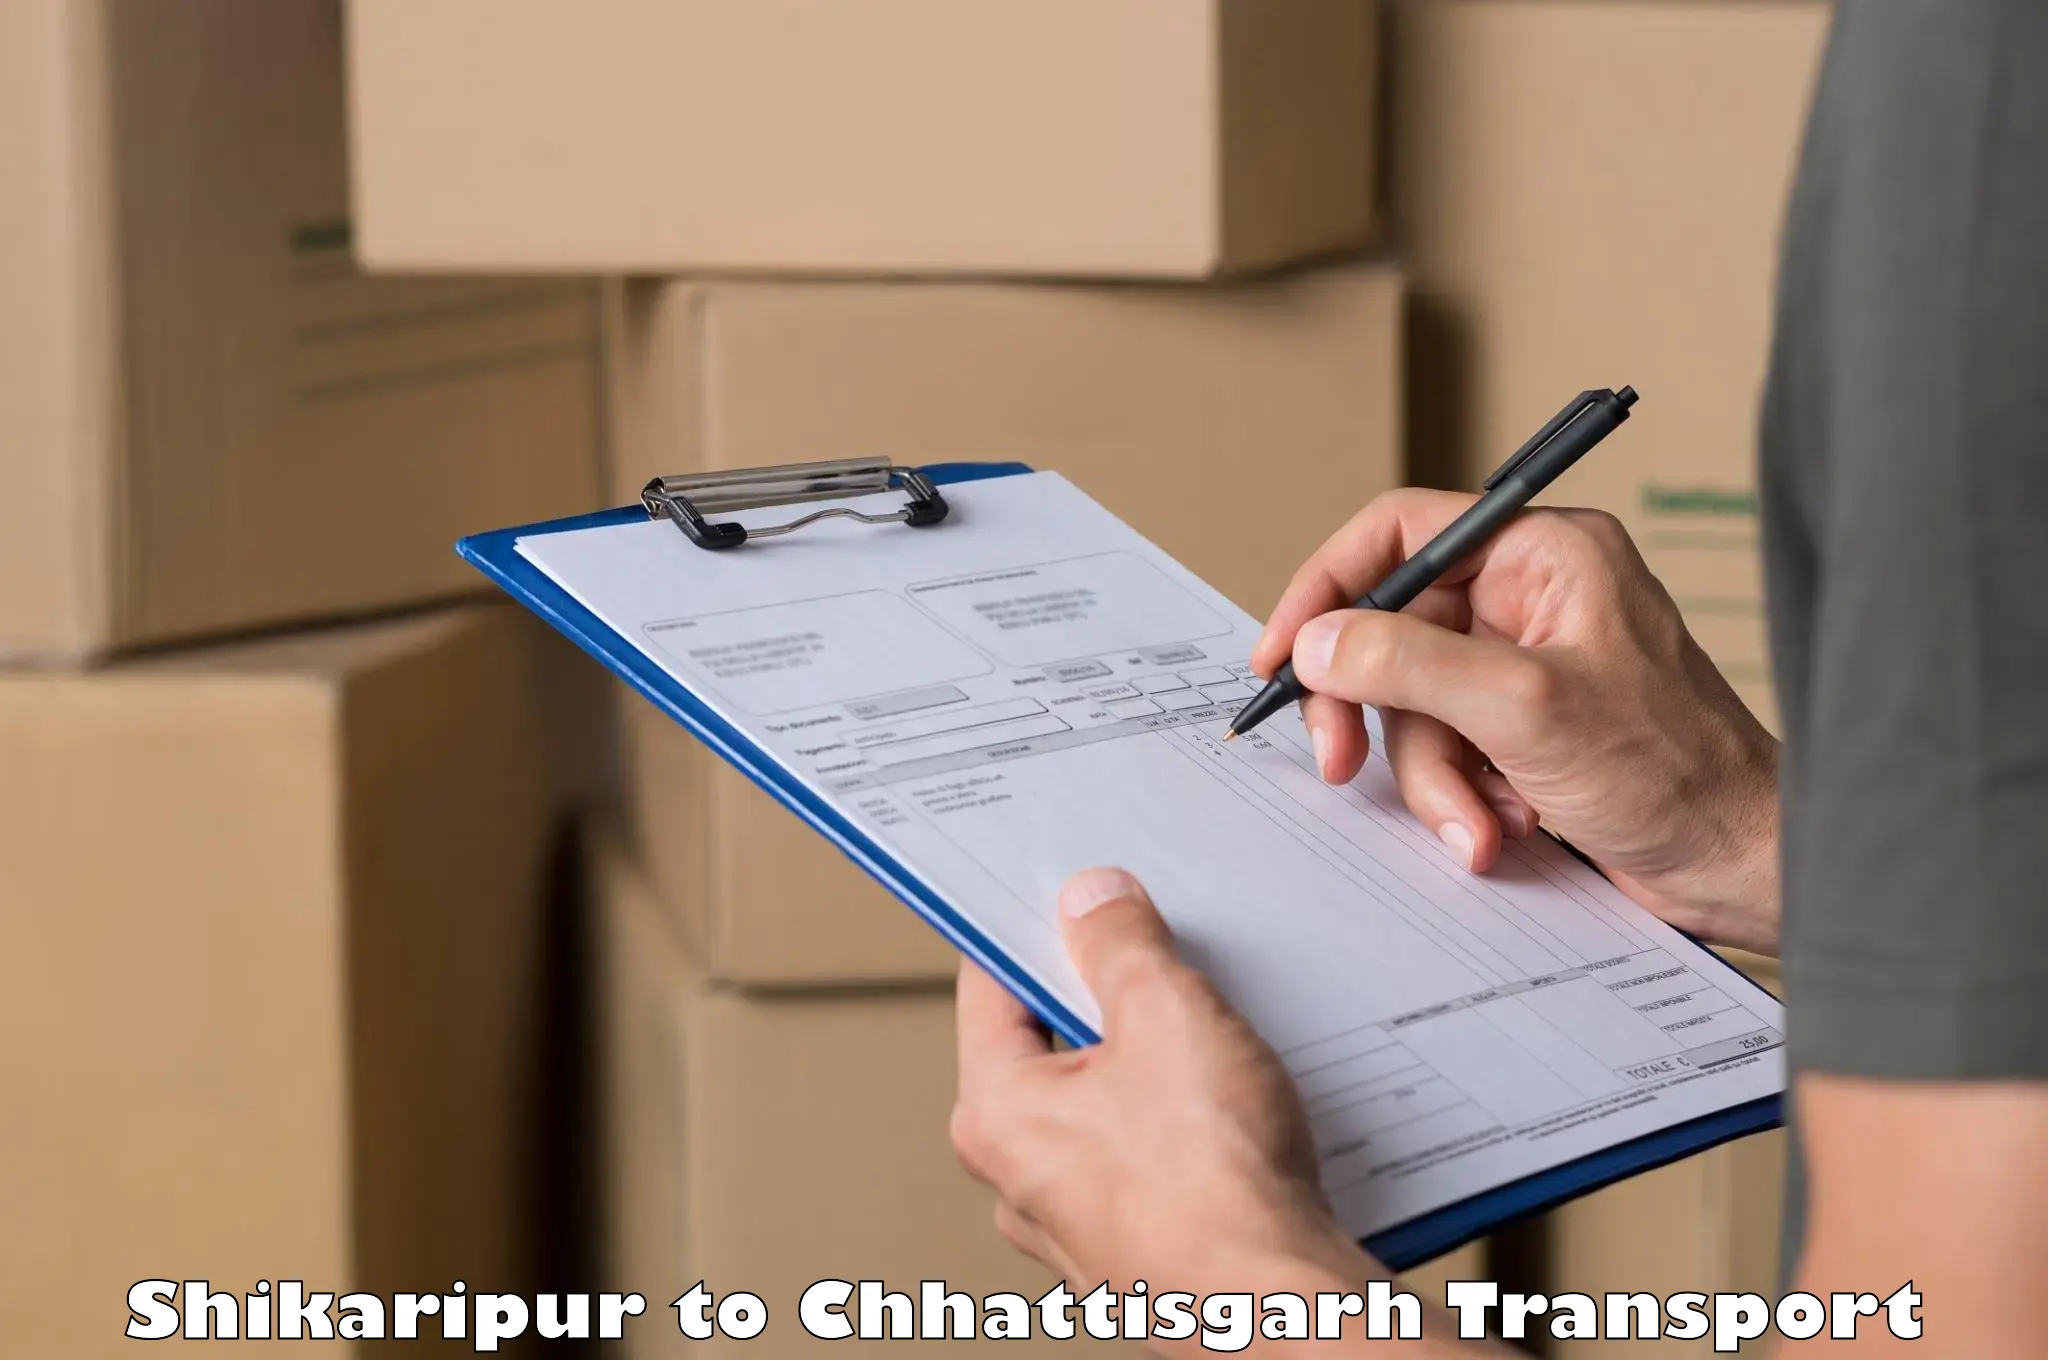 Furniture transport service Shikaripur to Pendra